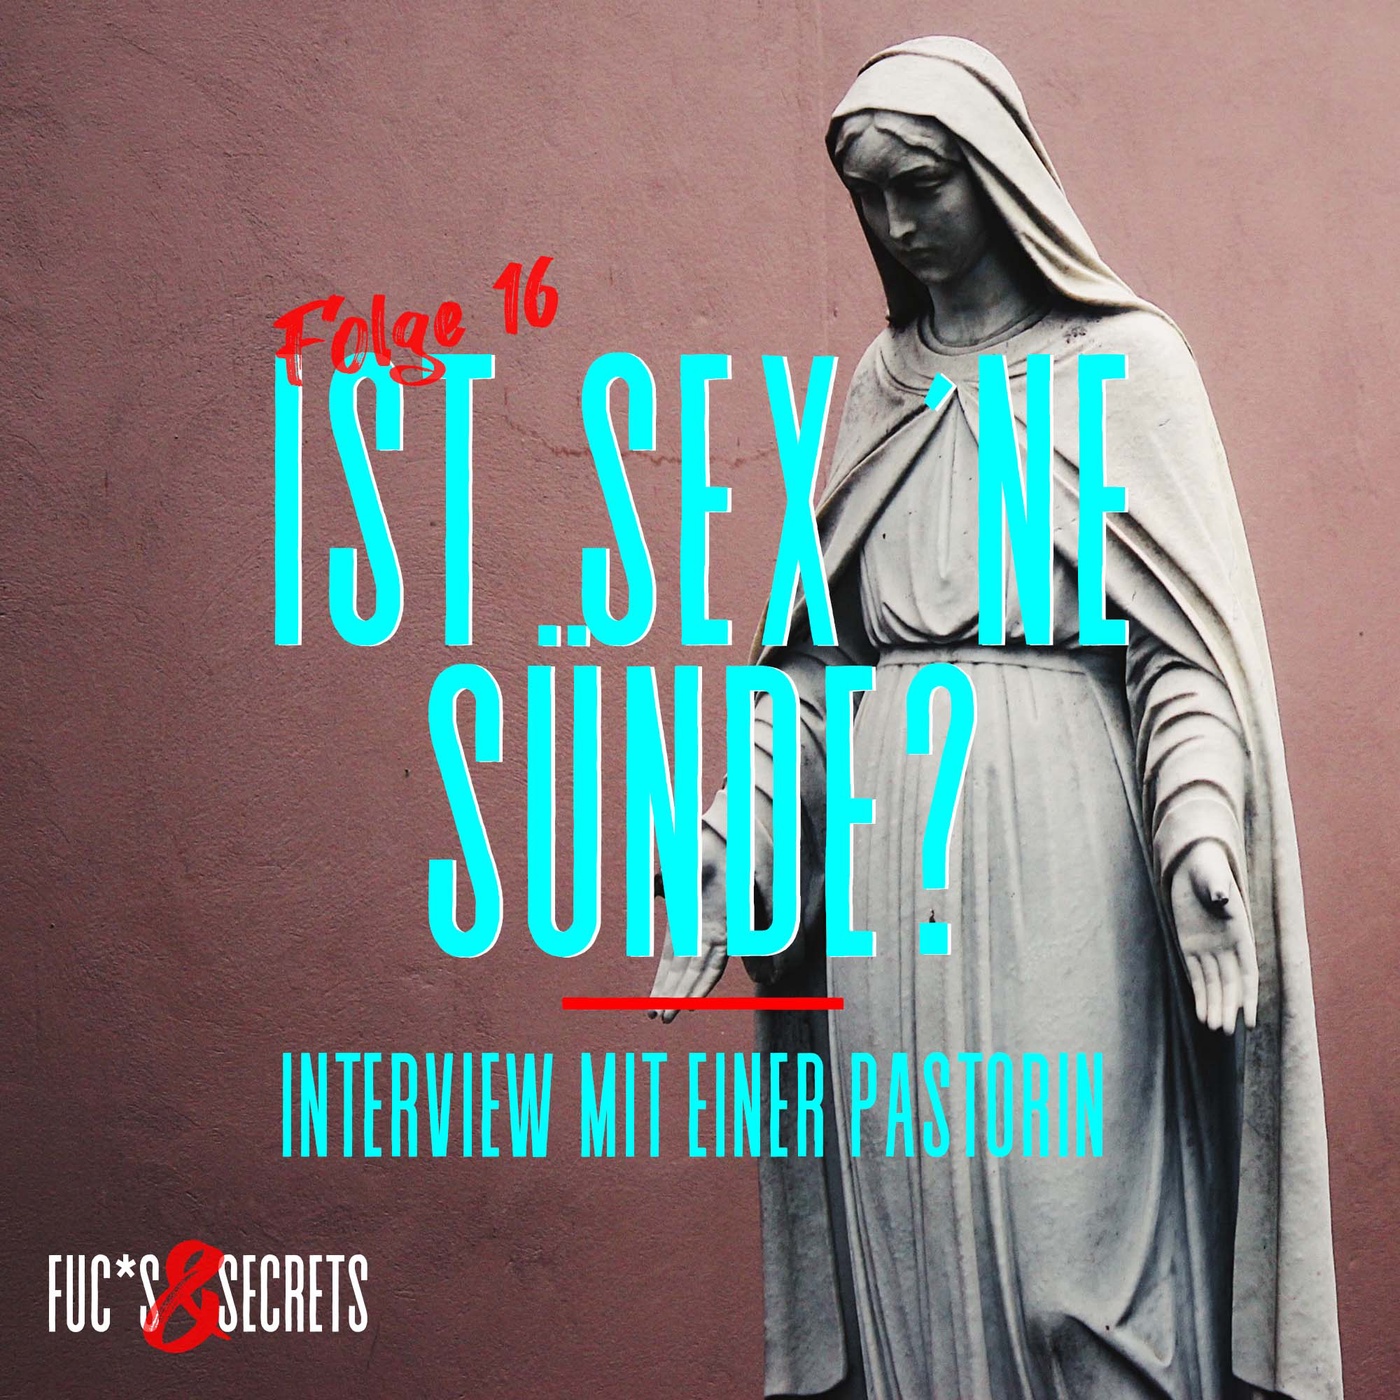 Ist Sex ´ne Sünde? - Interview mit einer Pastorin